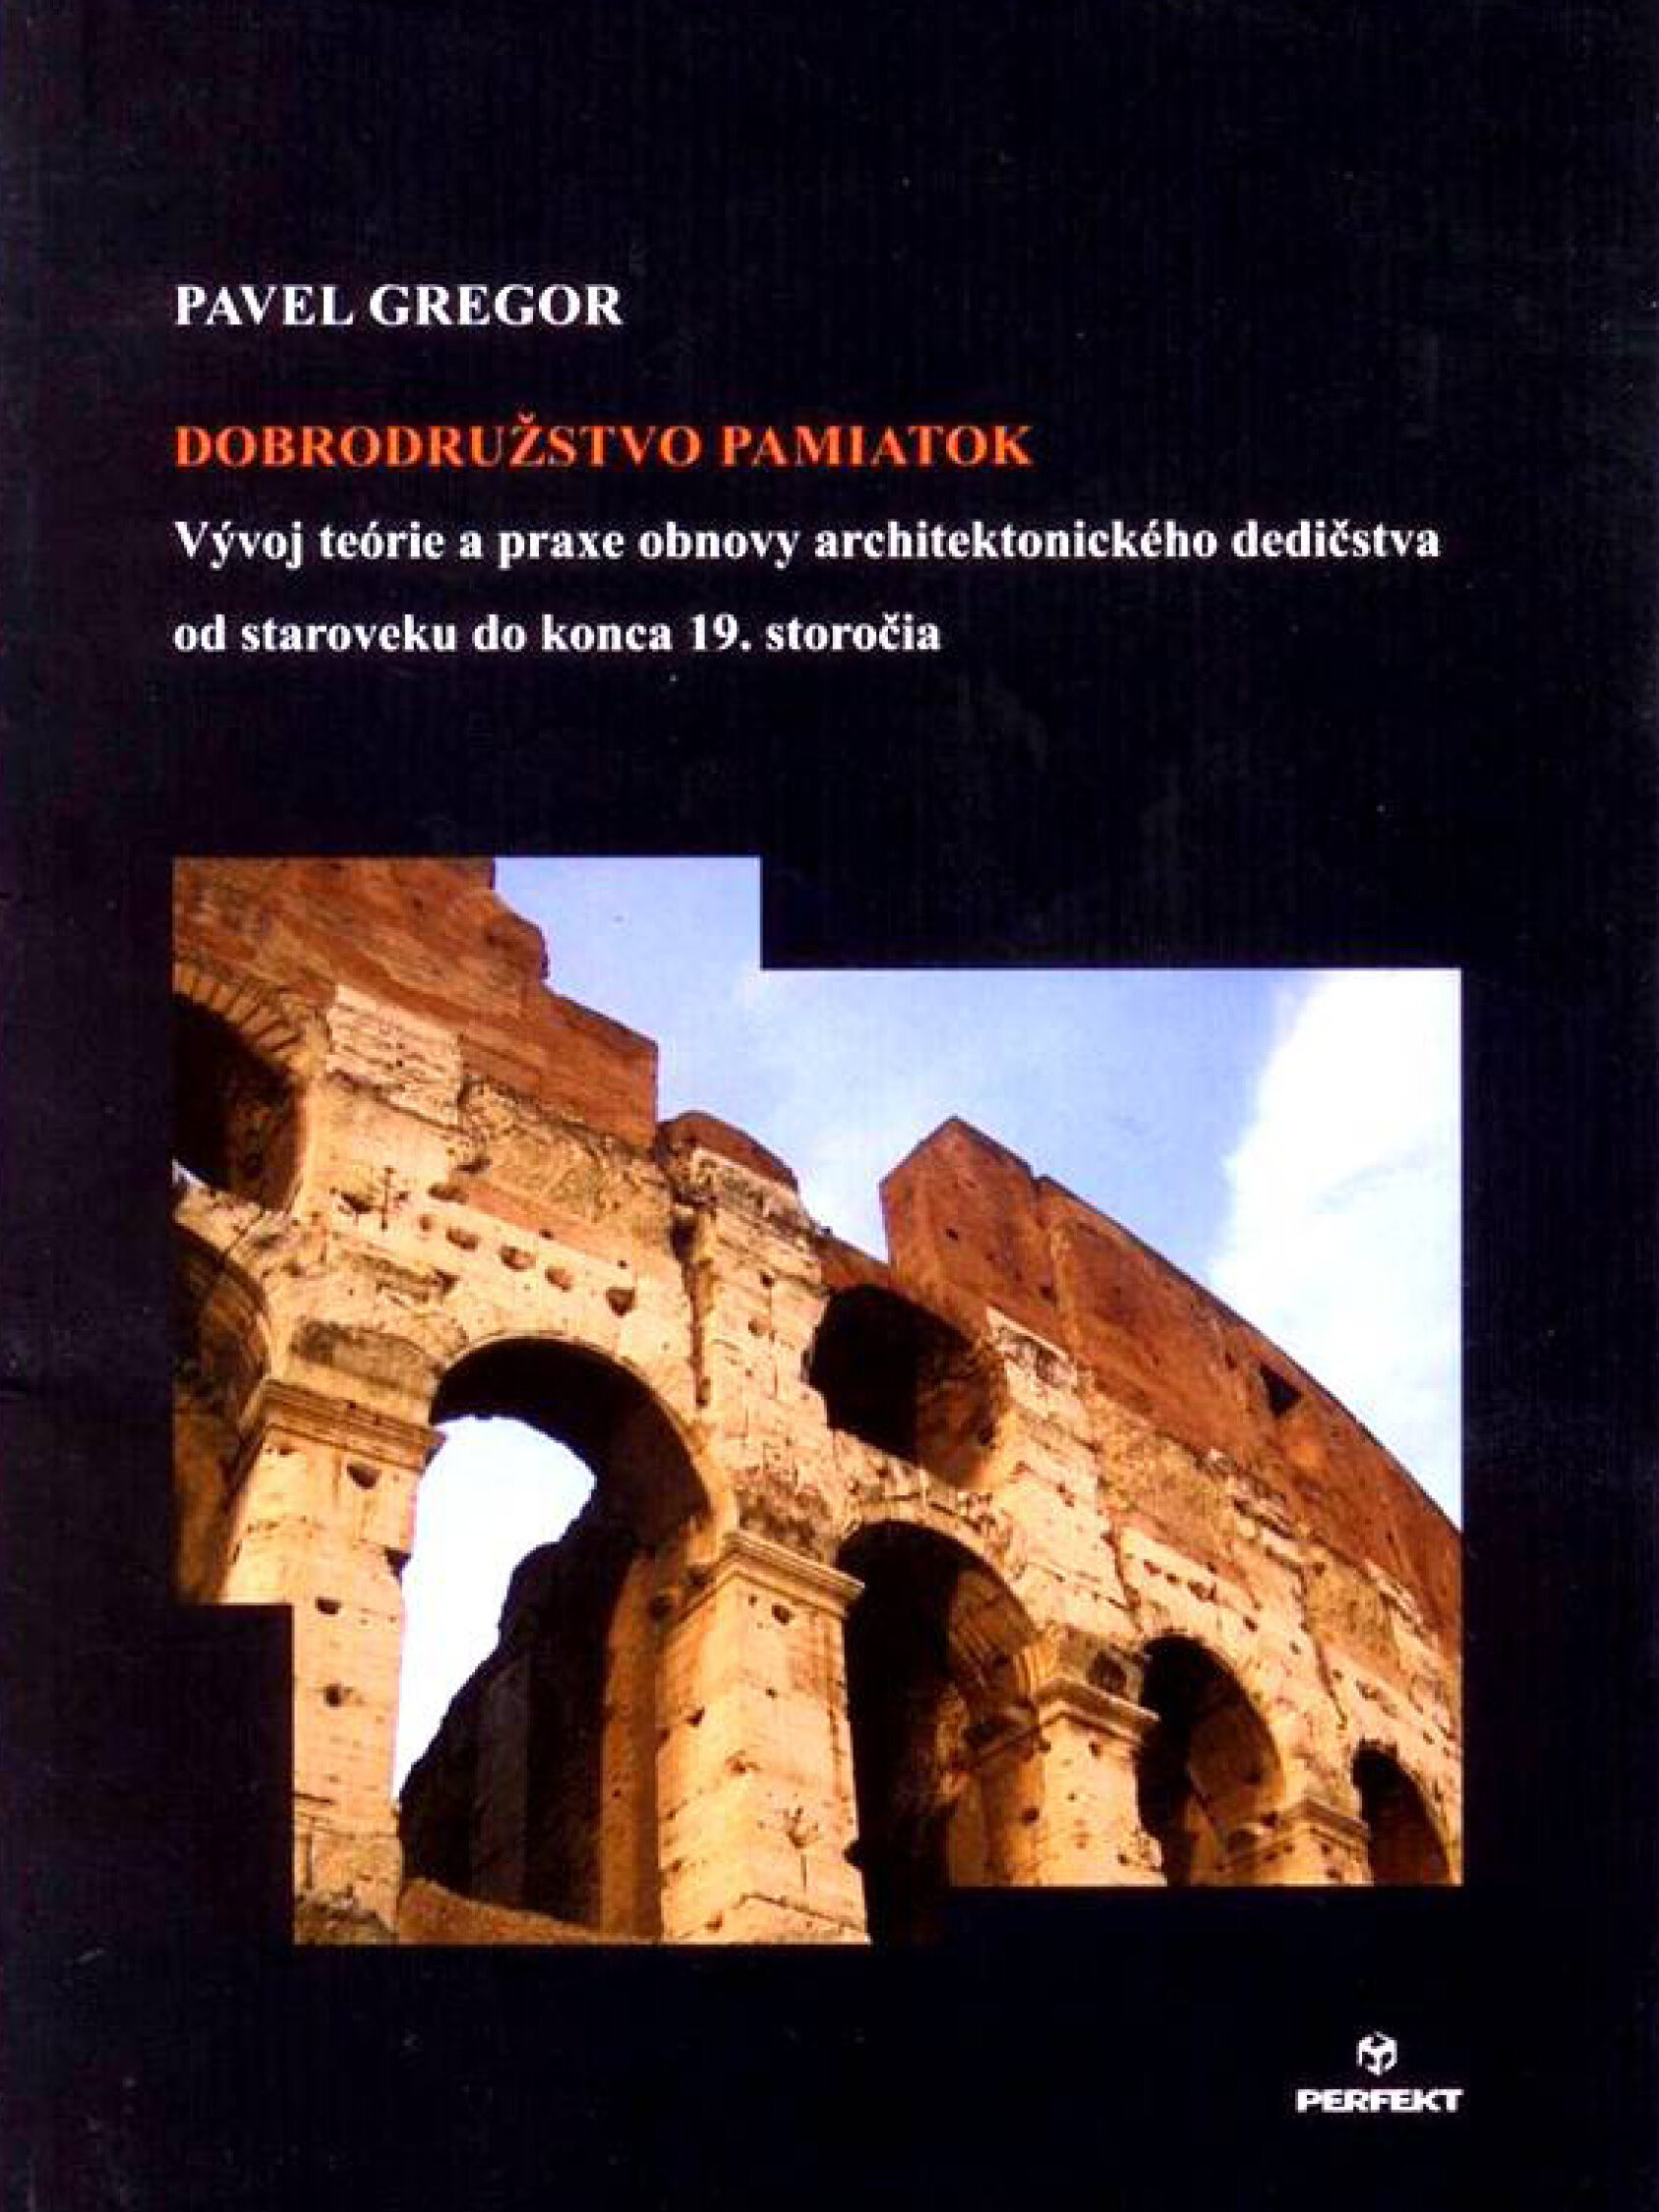 Kniha Dobrodružstvo pamiatok, ktorá bola napísaná s cieľom rozšíriť poznanie prístupov a historických súvislostí konkrétnych aj menej známych, či zriedkavejšie uvádzaných príkladov obnovy architektonických diel.